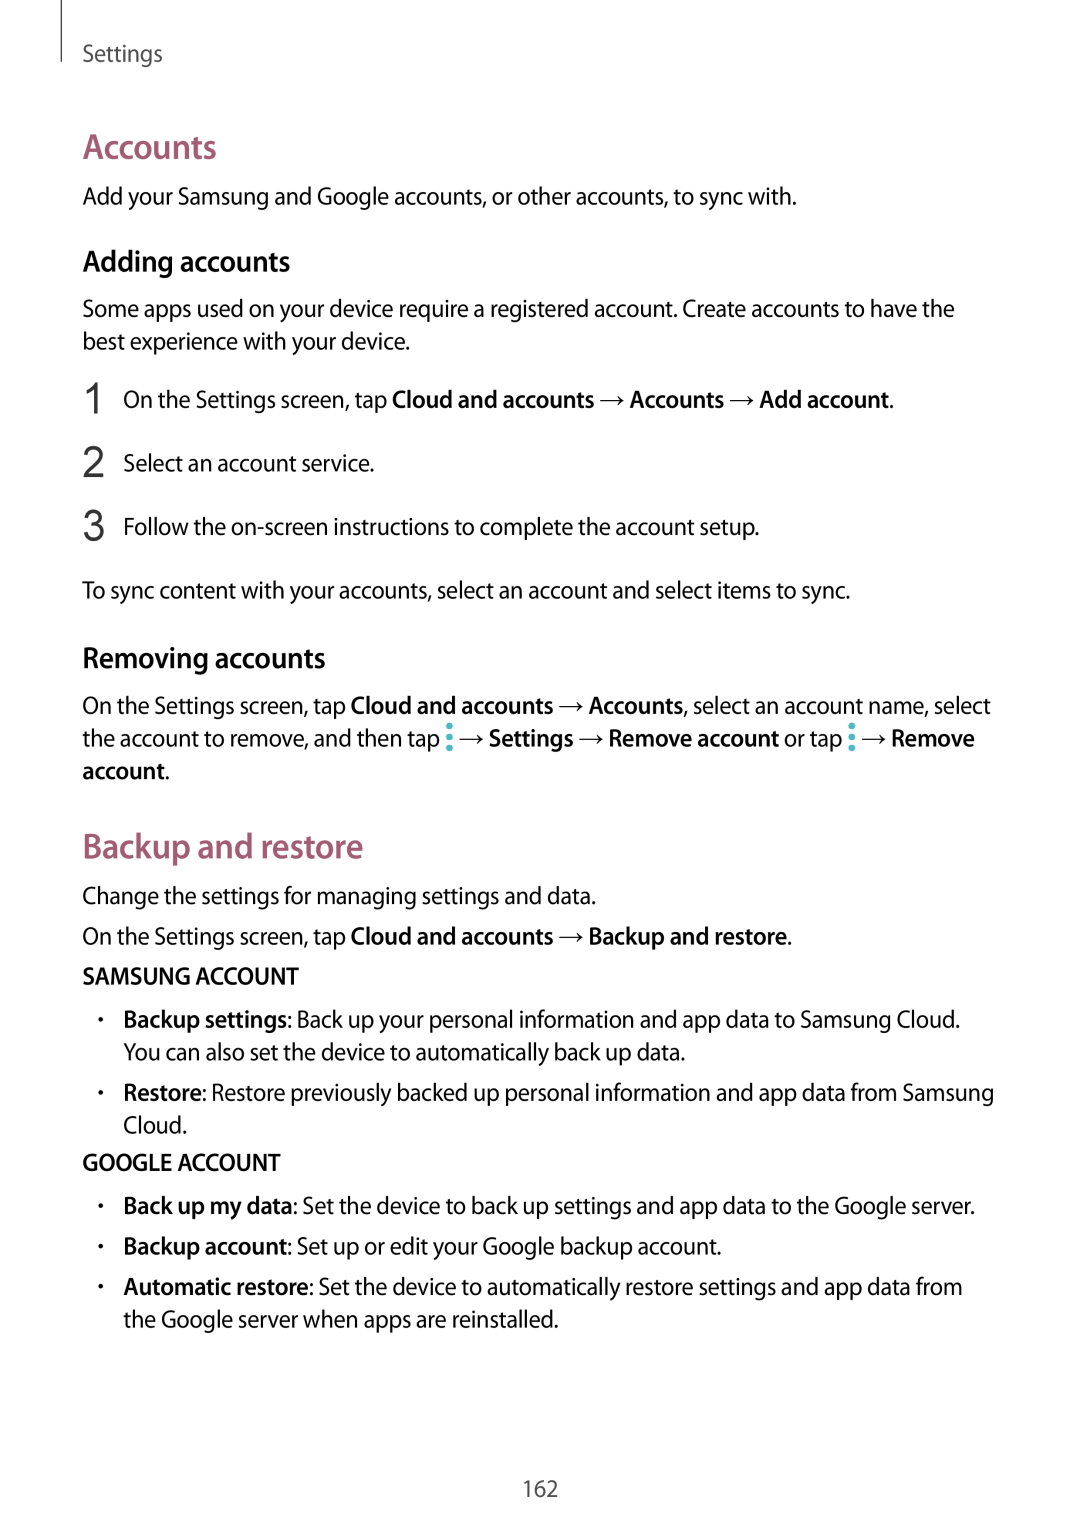 Samsung SM-G928FZKASEB Accounts, Backup and restore, Adding accounts, Removing accounts, Samsung Account, Google Account 